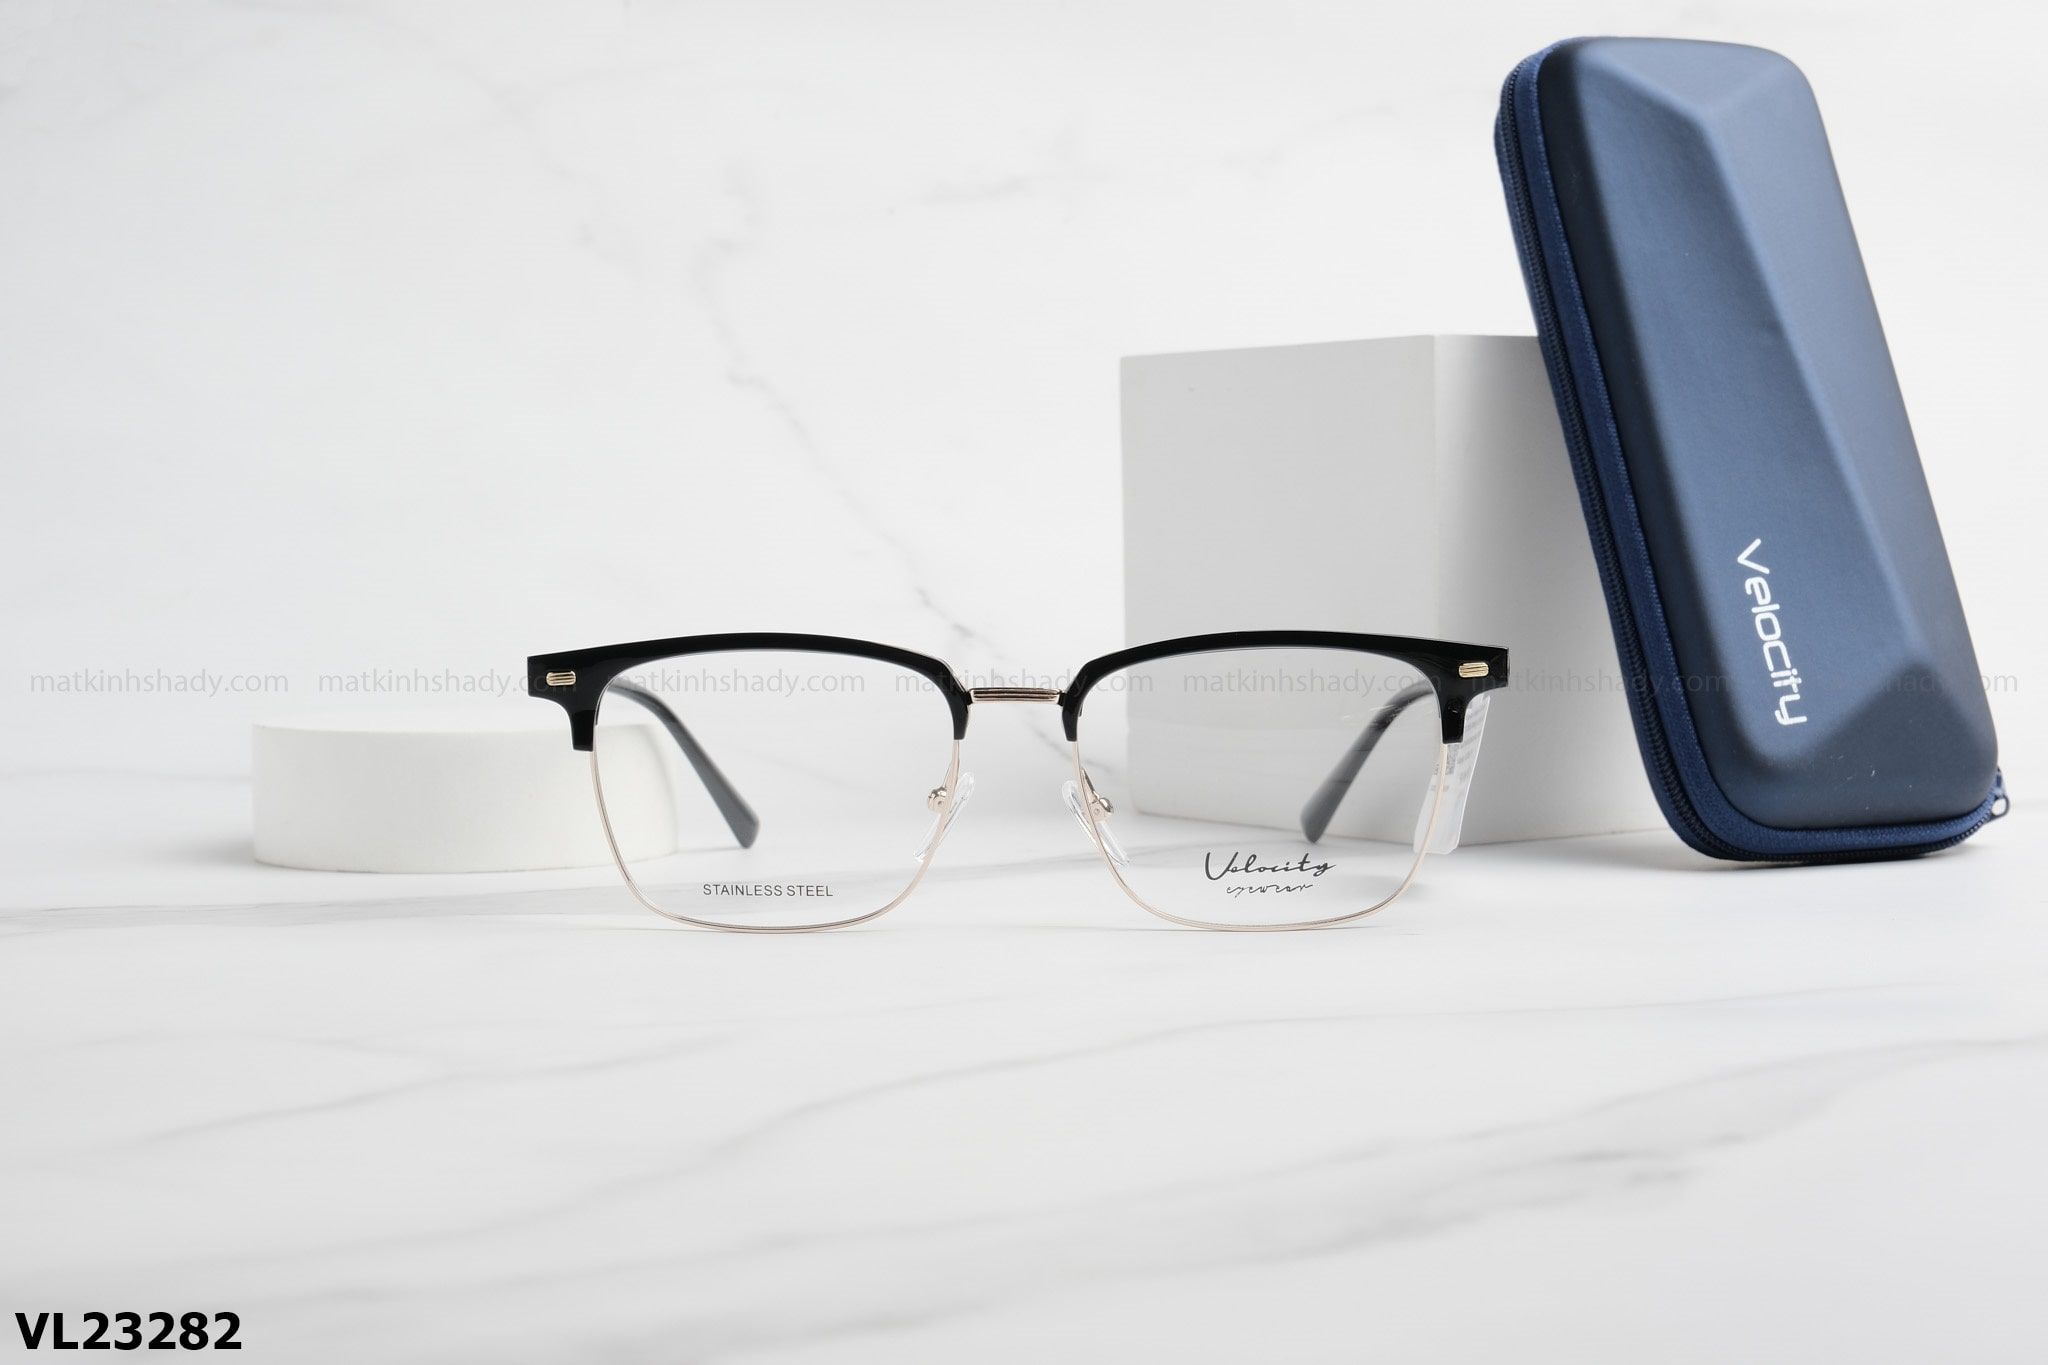  Velocity Eyewear - Glasses - VL23282 